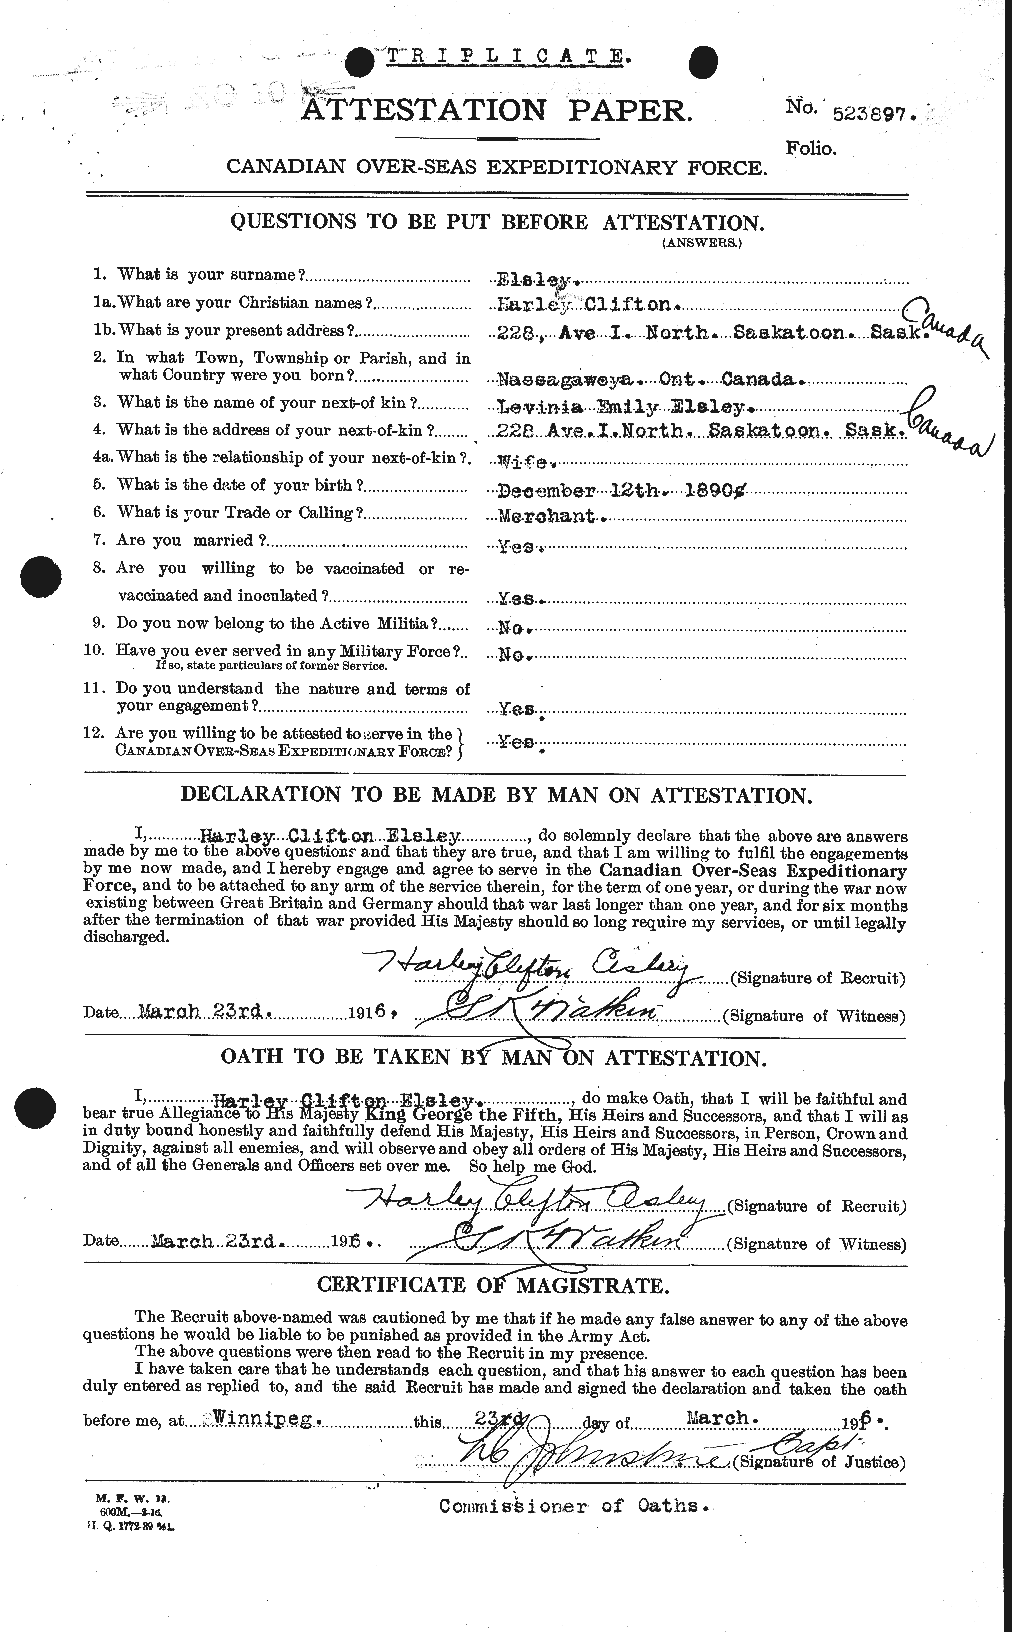 Dossiers du Personnel de la Première Guerre mondiale - CEC 312815a